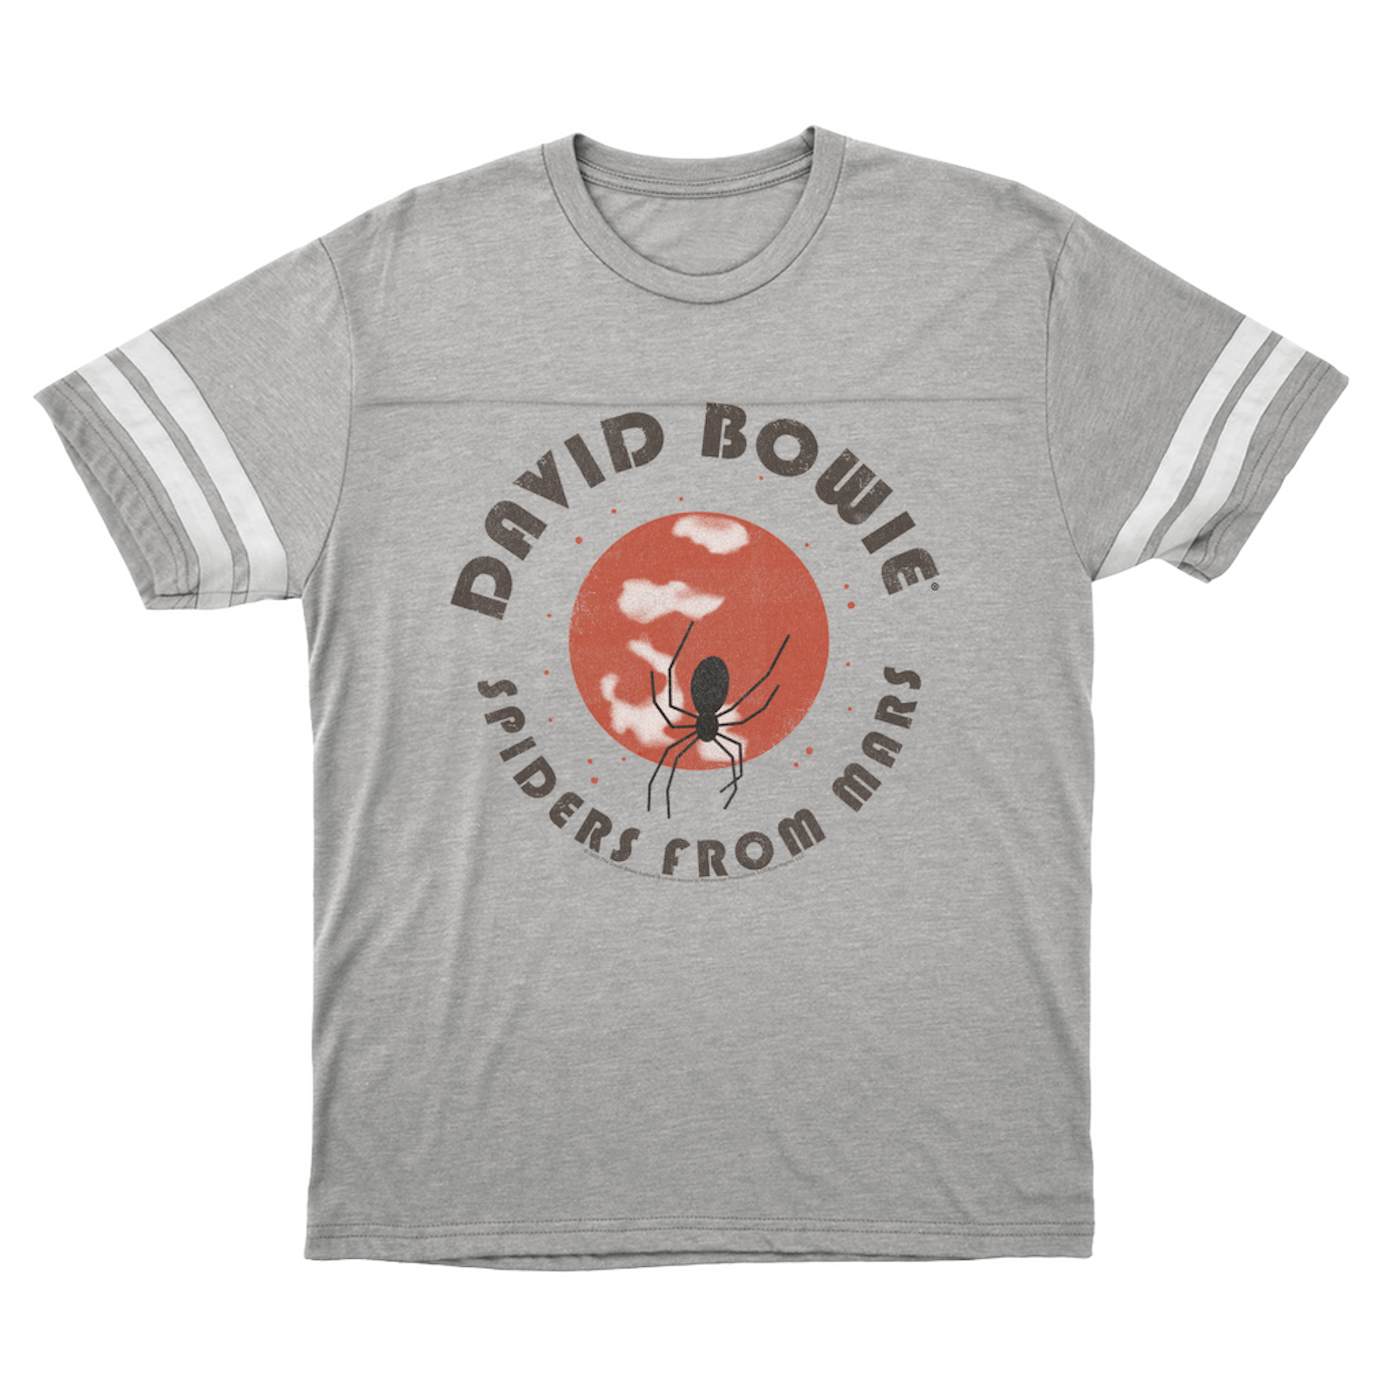 David Bowie T-Shirt | Spiders From Mars Design (Merchbar Exclusive) David Bowie Football Shirt